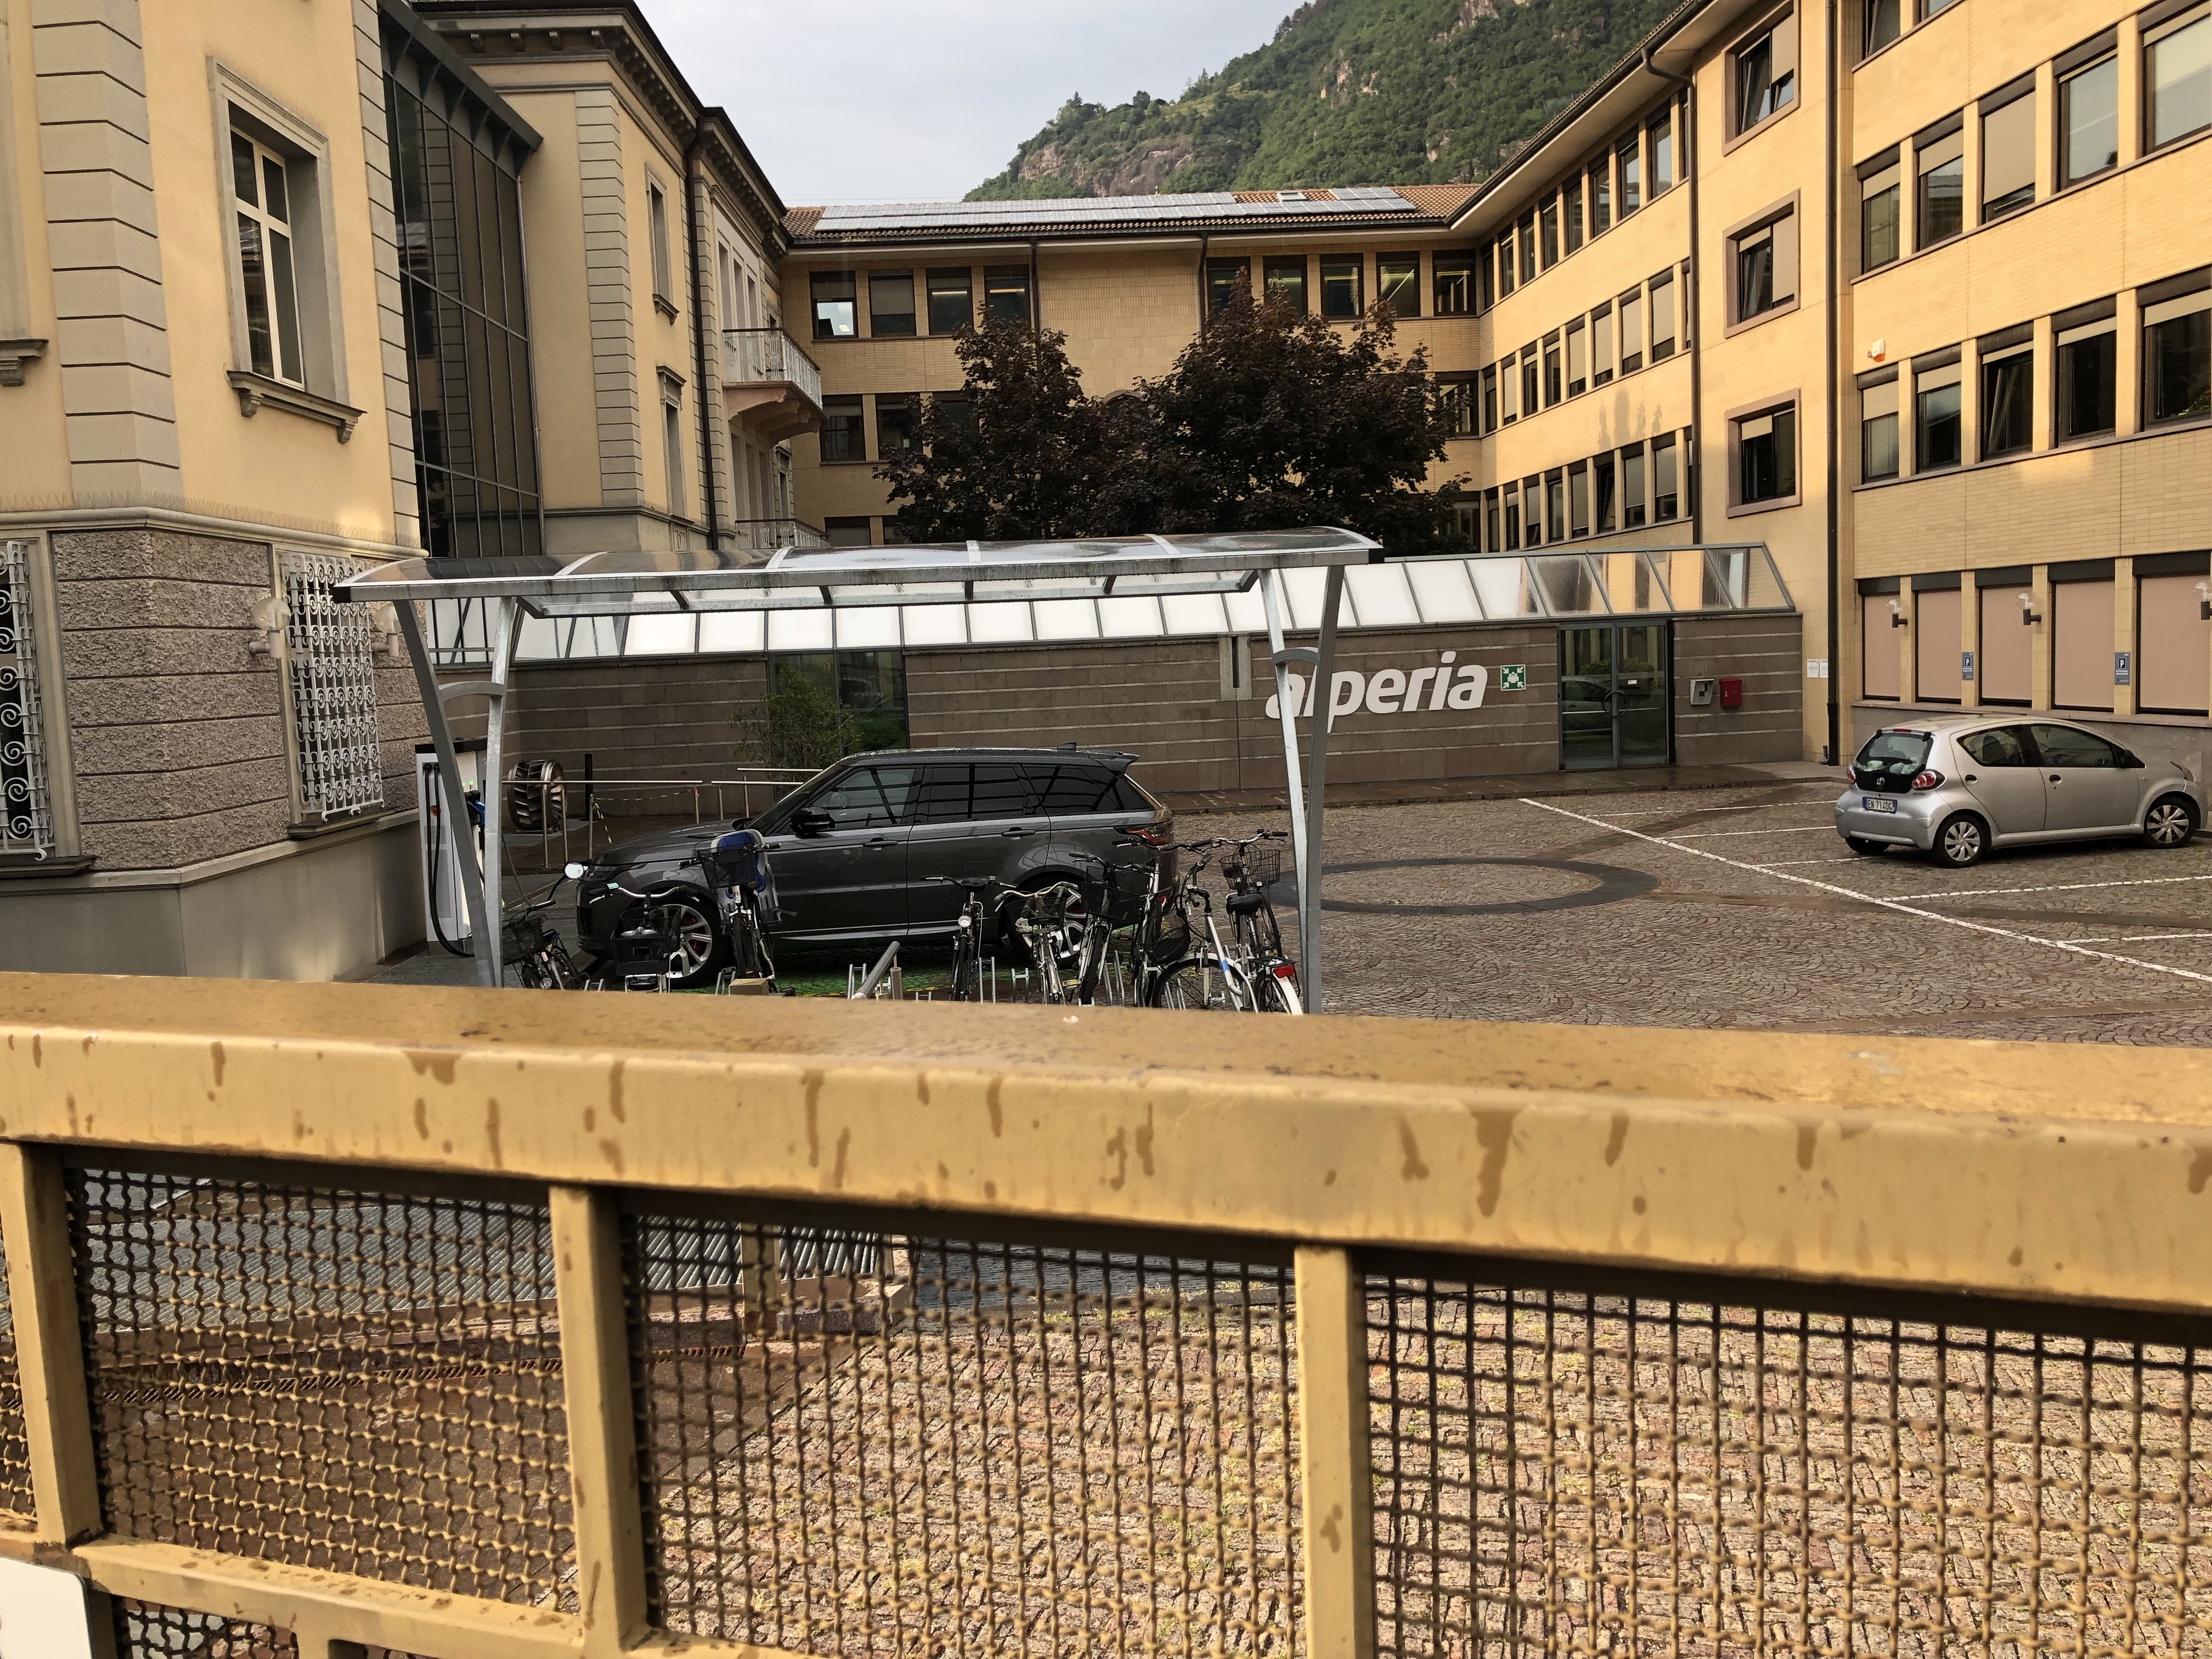 Range Rover ibrida plug-in in ricarica chiusa nella sede di Alperia a Bolzano